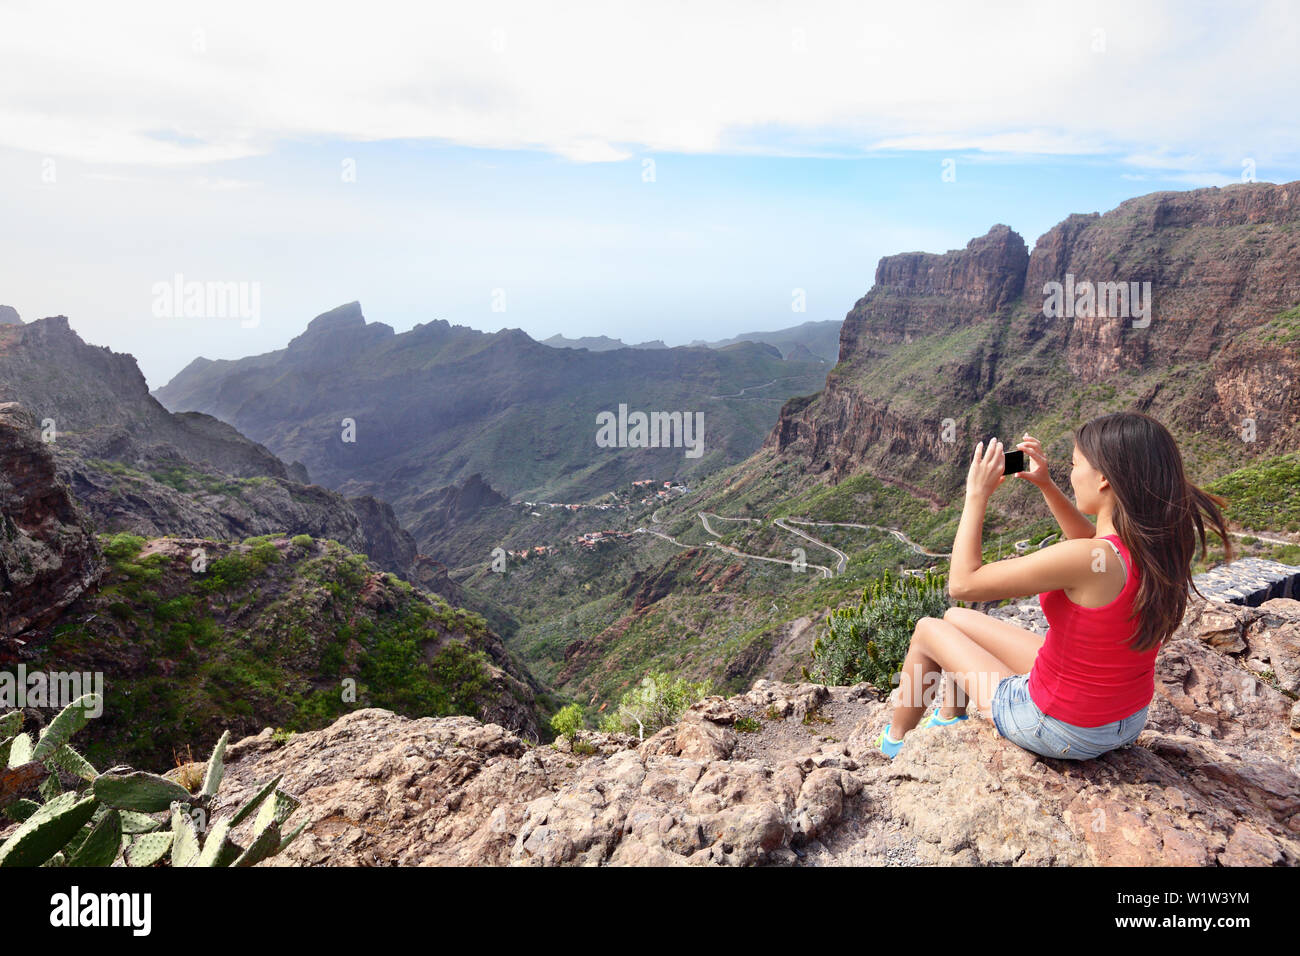 Frau fotografieren Berge beim Sitzen auf einer Klippe. Junge weibliche wird mittels Smart Phone klicken Sie auf das Bild einer schönen Natur. Rückansicht Tourist besuchen Teneriffa Masca Tal, Kanarische Inseln, Spanien. Stockfoto